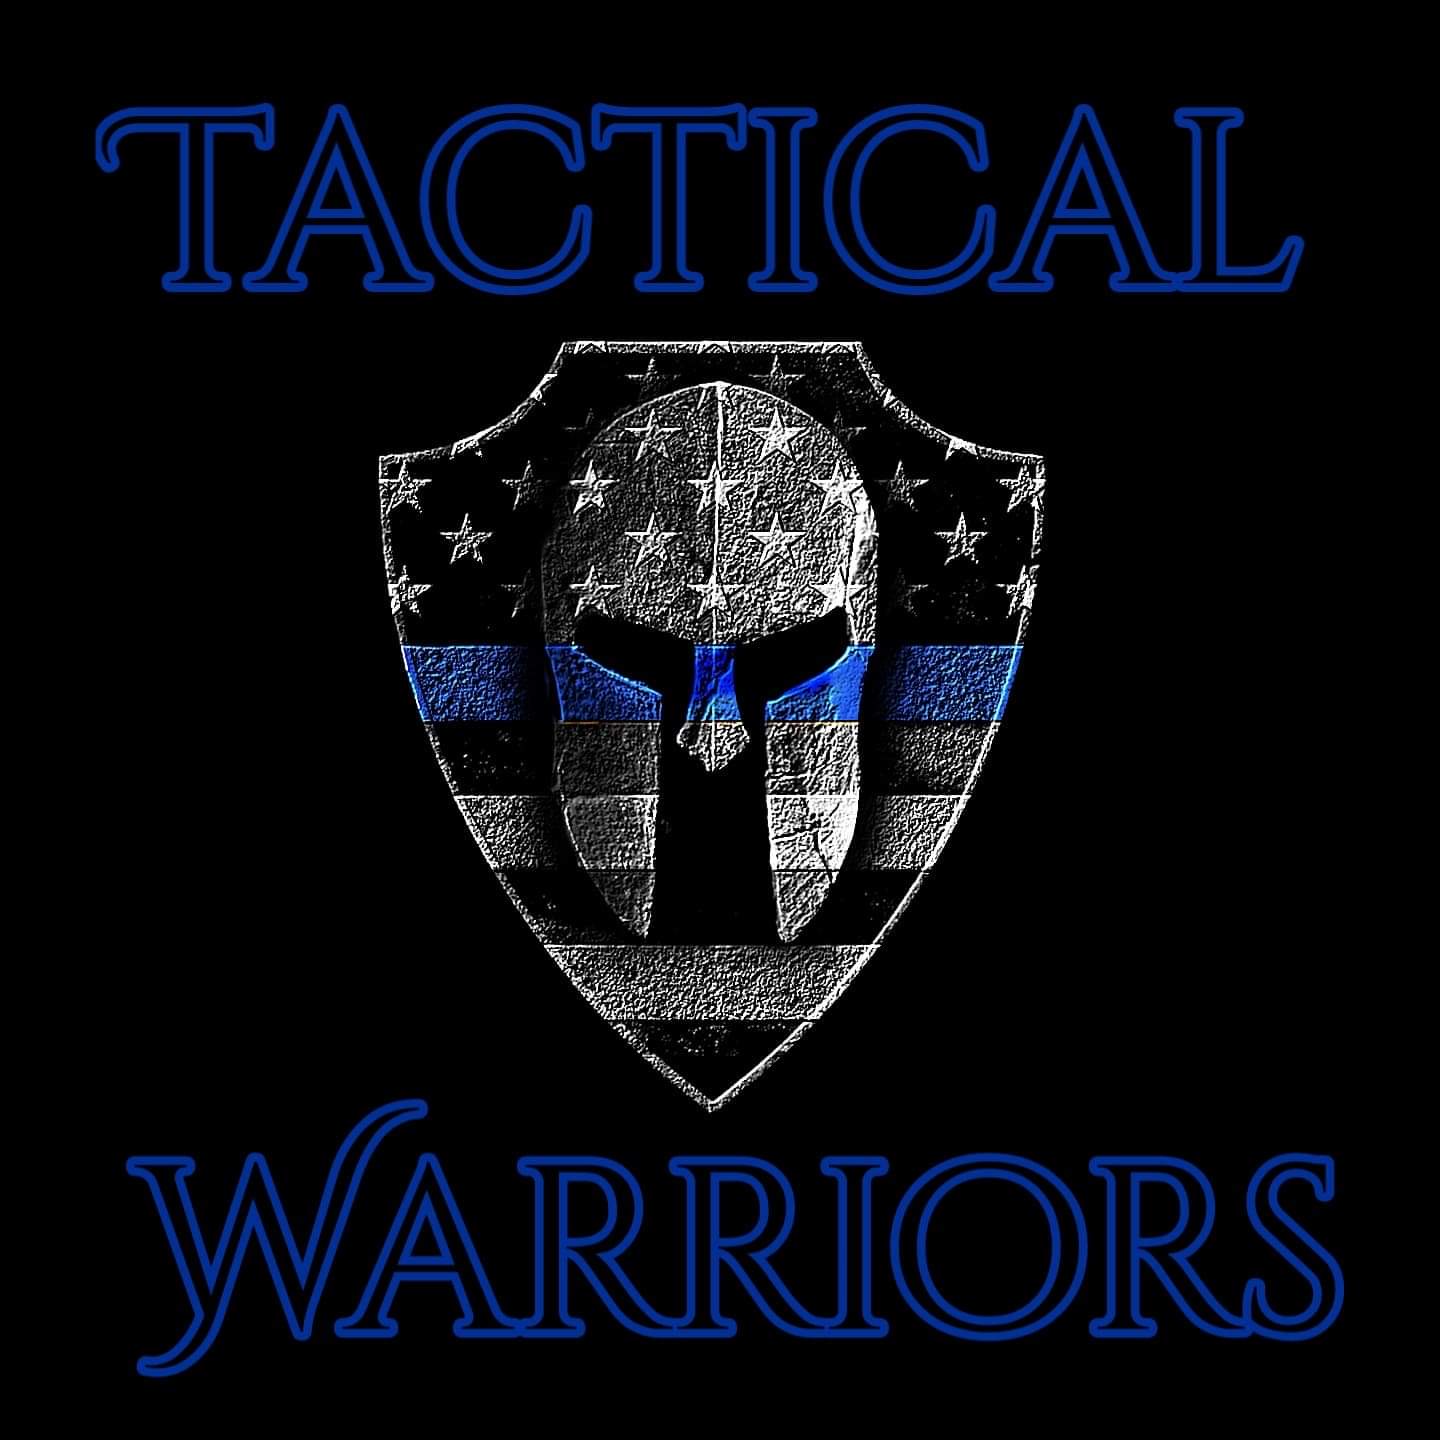 Tactical Warriors